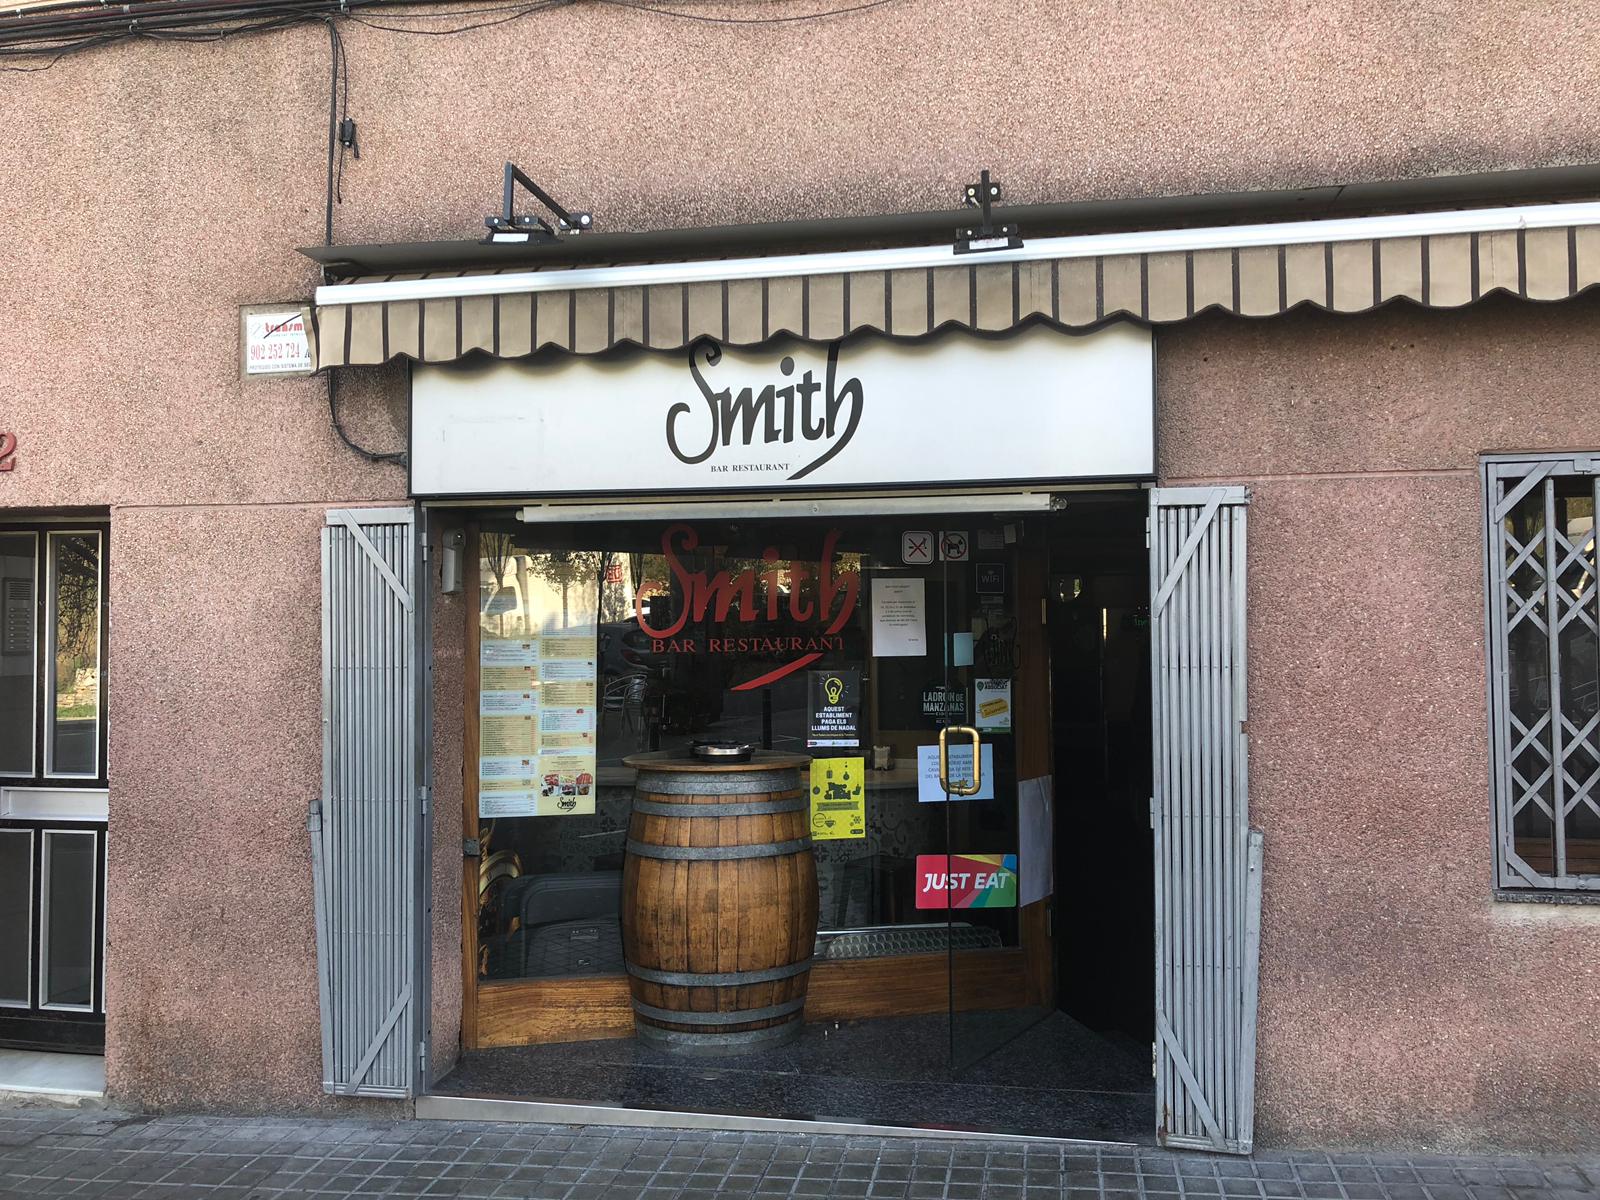 exterior-fachada-puerta-principal-restaurante-bar-smith-barcelona.jpeg